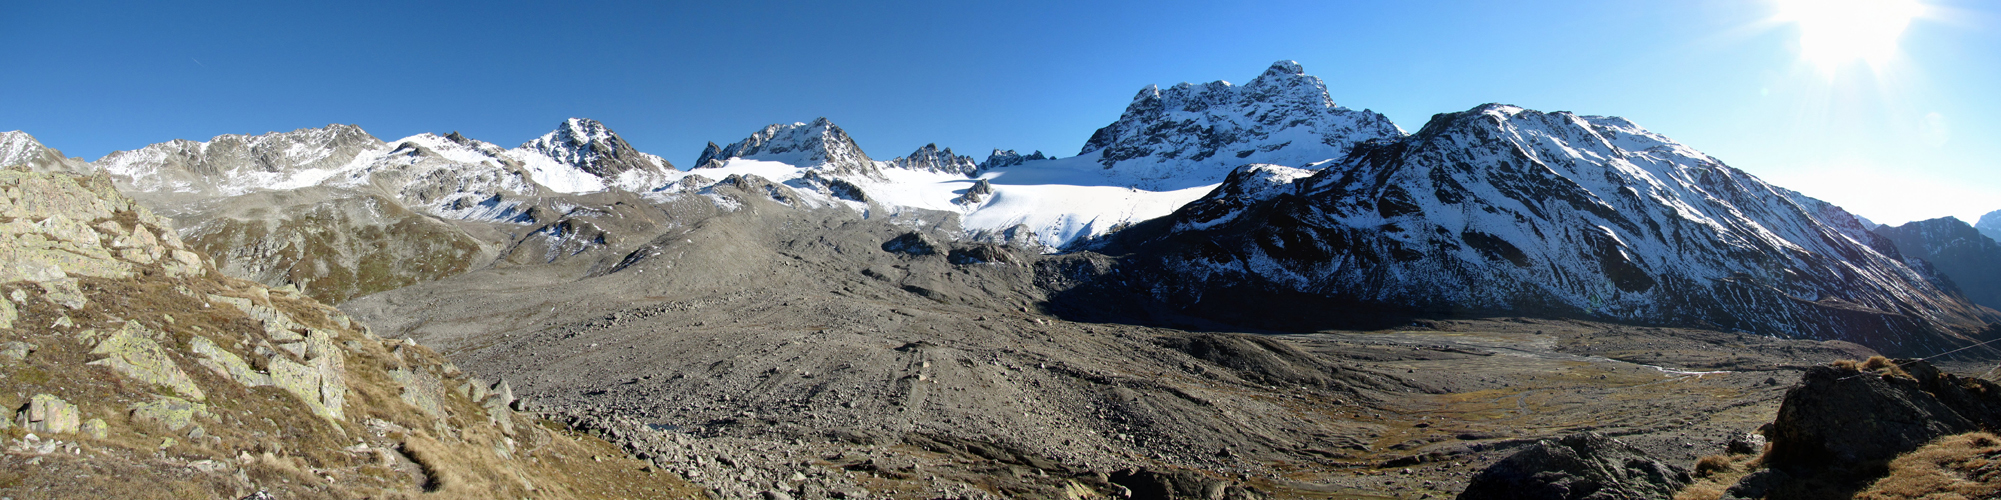 Breitbildfoto von der Keschhütte aus gesehen, Richtung Piz Porchabella, Piz Val Müra, Porchabella Gletscher und der Piz Kesch